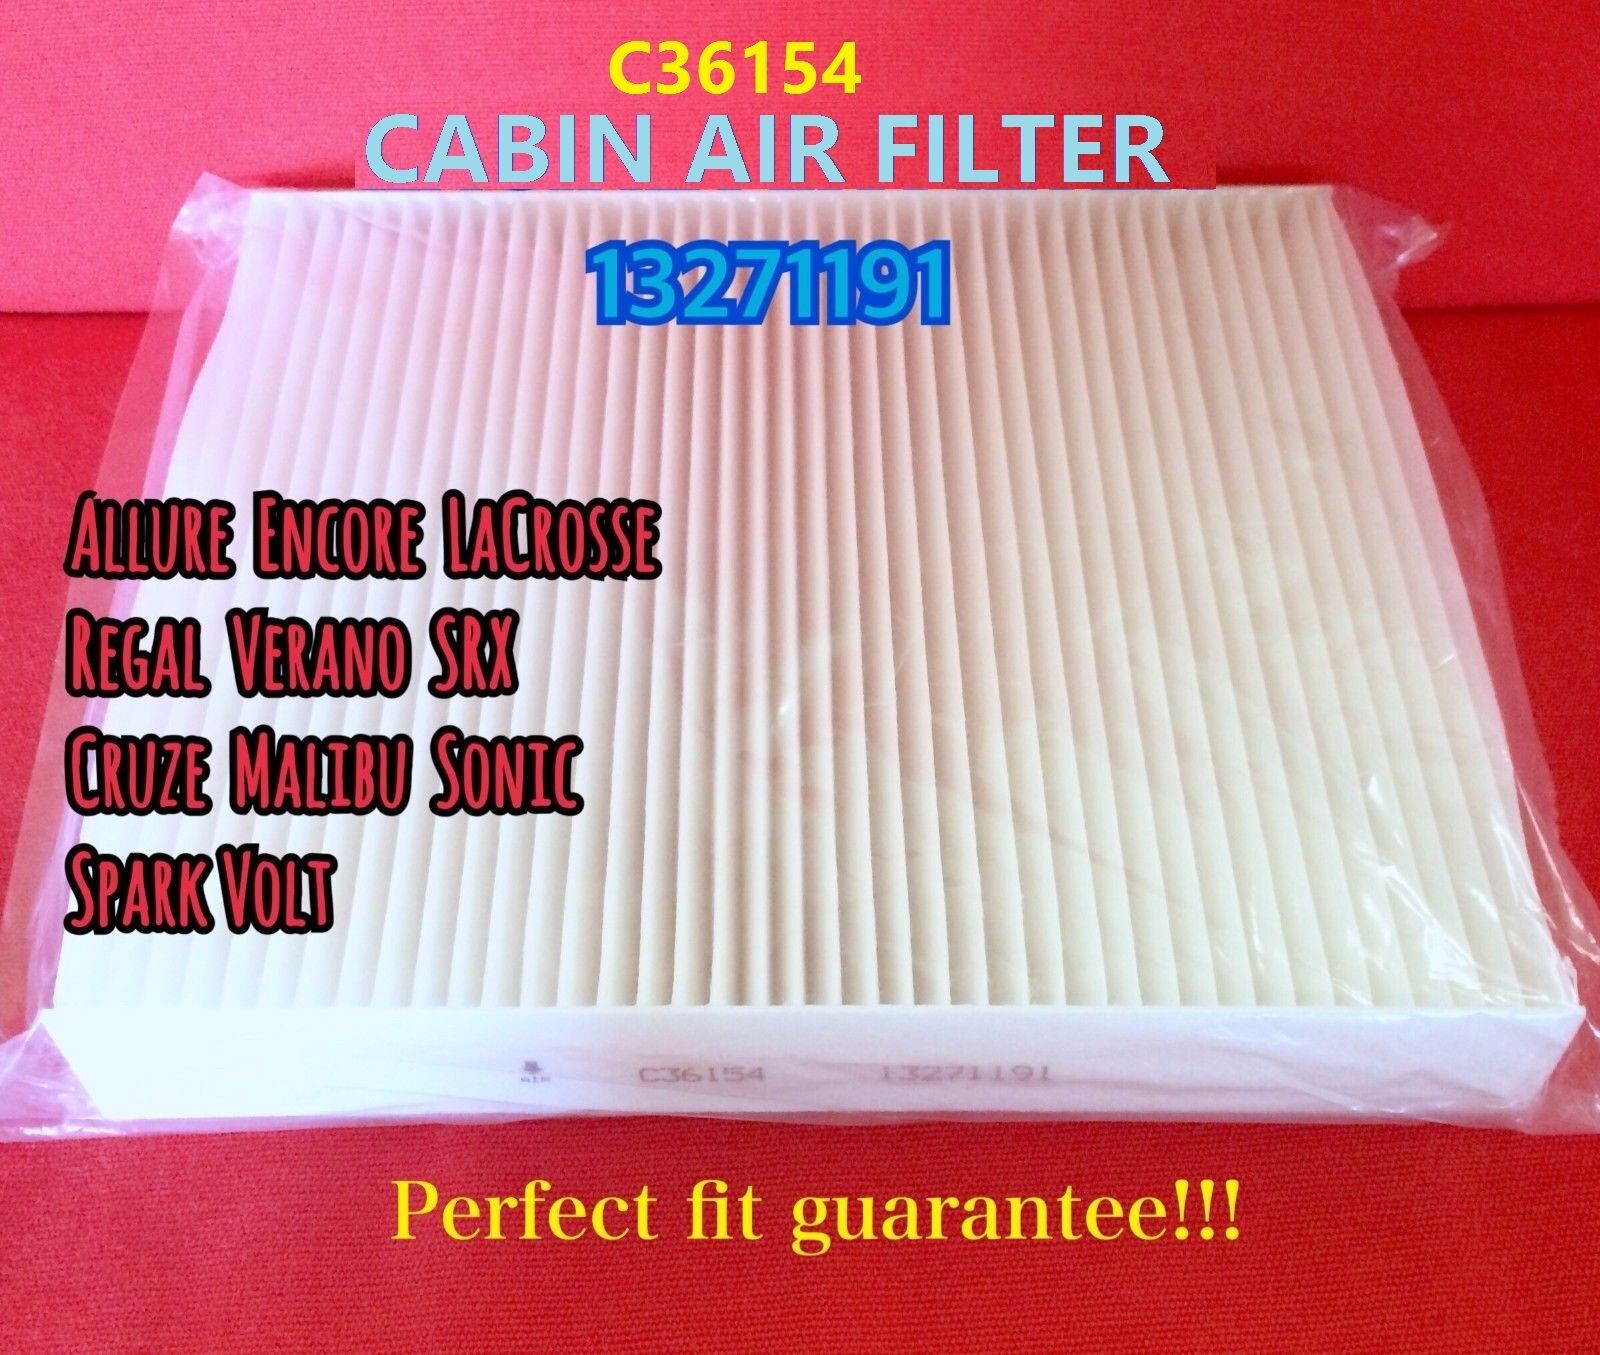 C36154 Cabin Air Filter For SRX Malibu LaCrosse Cruze Volt US Seller 13271191